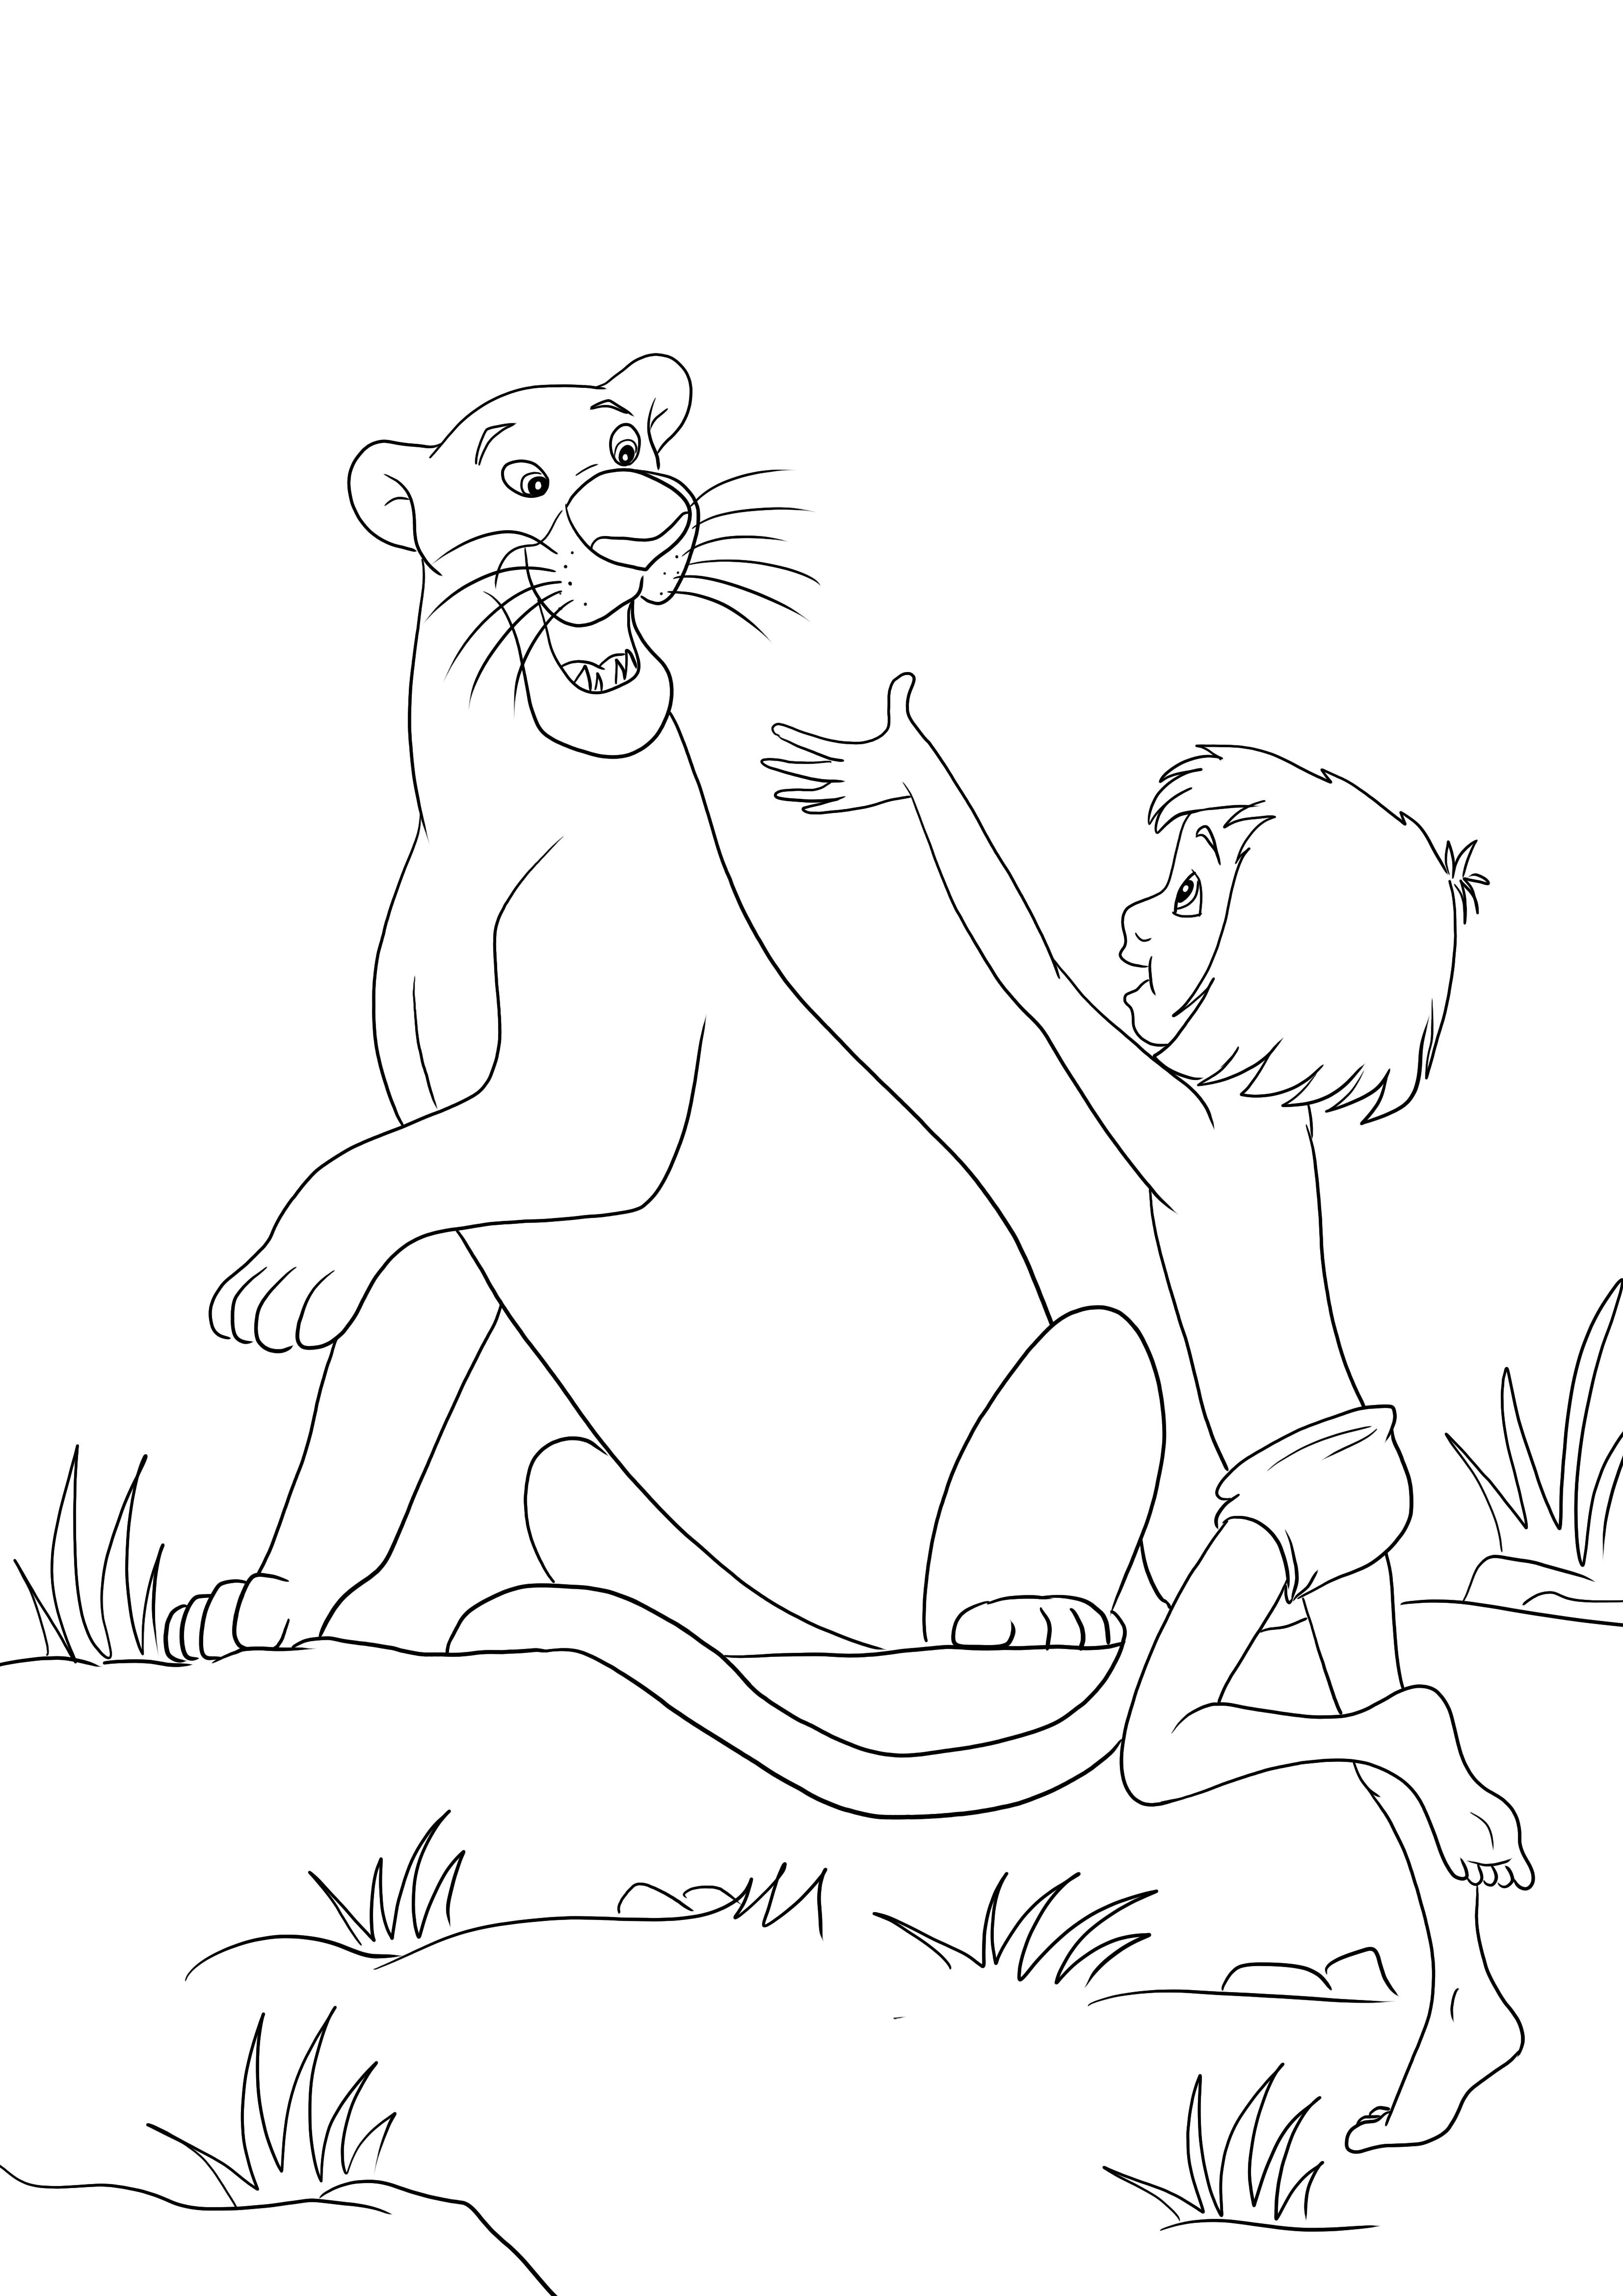 Mowgli et Bagheera sont heureux ensemble - coloriage et téléchargement gratuits